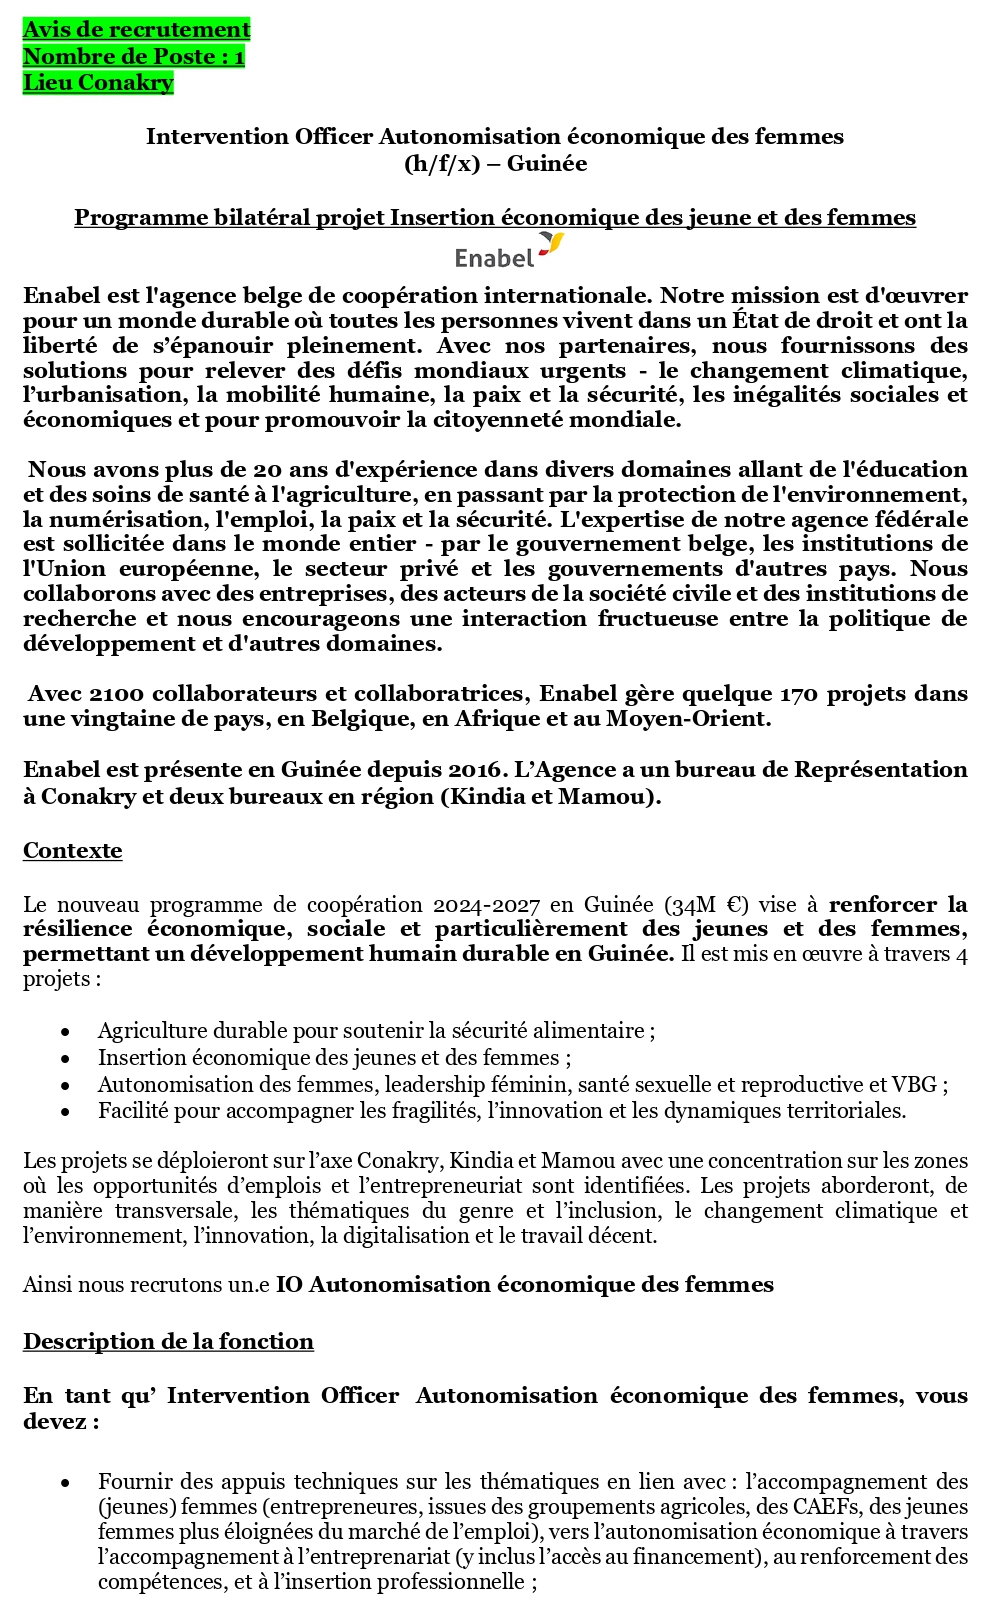 Avis de recrutement d'un Intervention Officer Autonomisation économique des femmes (h/f/x) – Guinée | Page 1